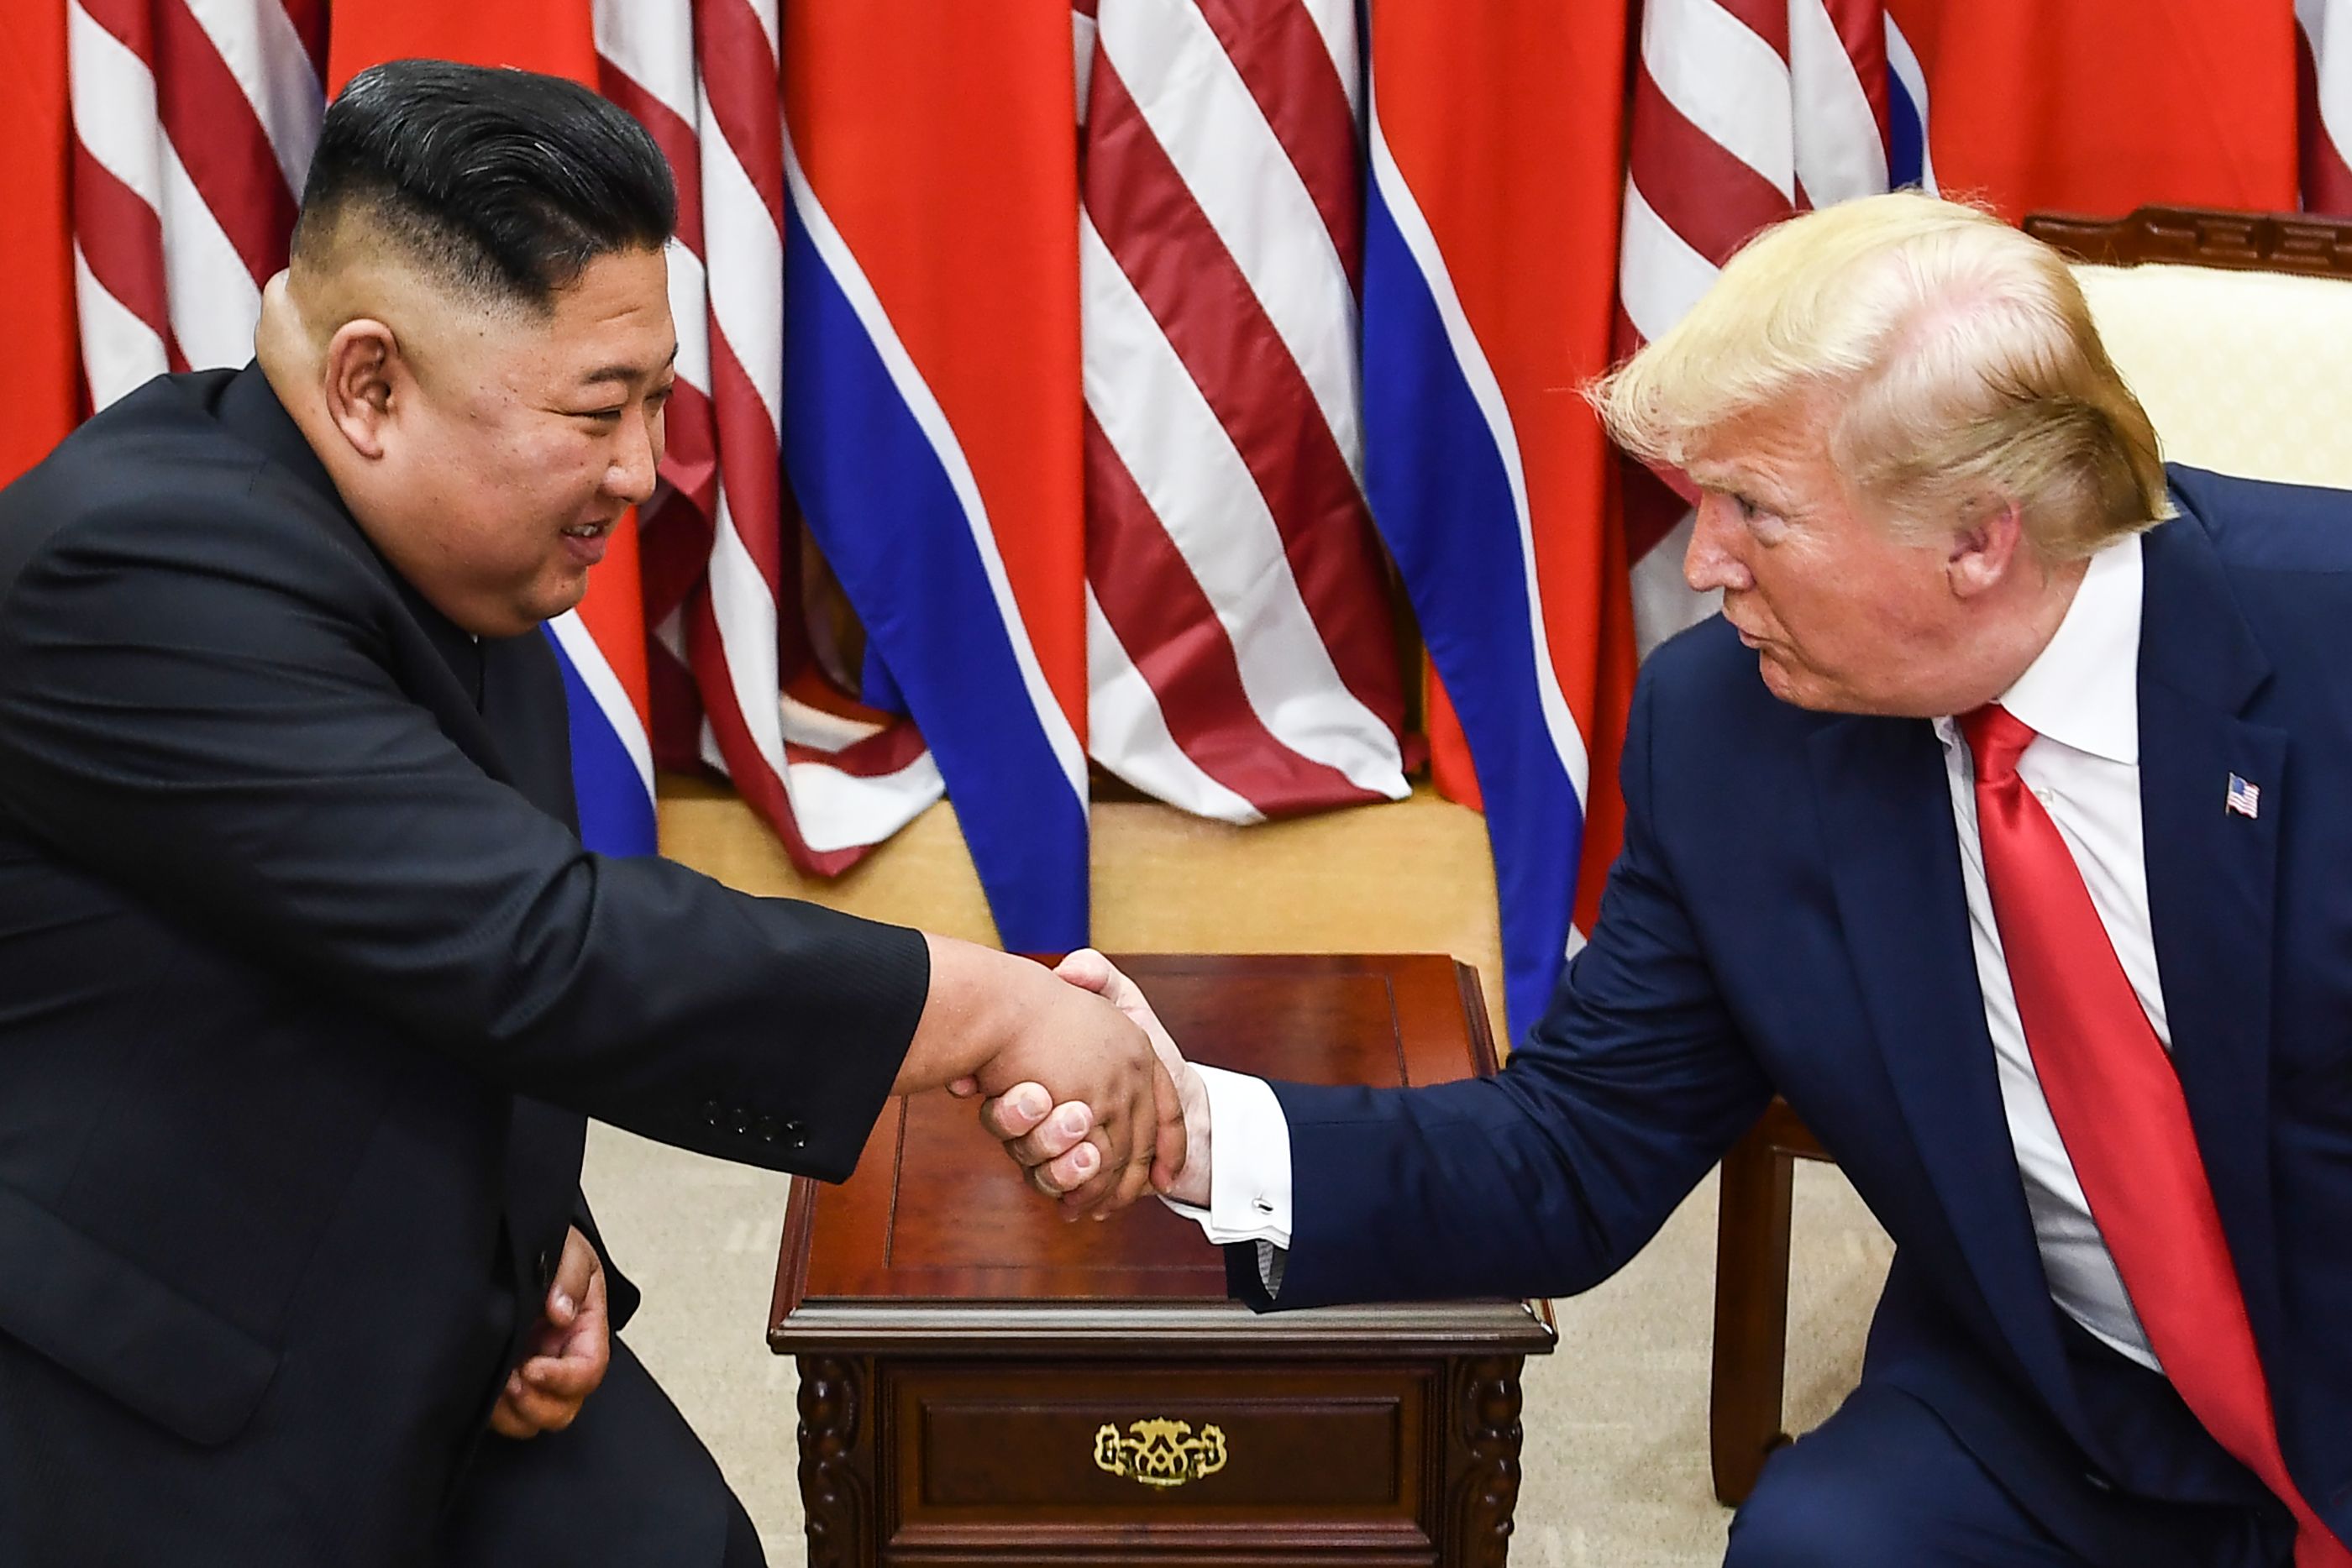 El líder de Corea del Norte Kim Jong Un y el presidente de los Estados Unidos Donald Trump se dan la mano durante una reunión en el lado sur de la Línea de Demarcación Militar que divide a Corea del Norte y del Sur. (Foto Prensa Libre: AFP)